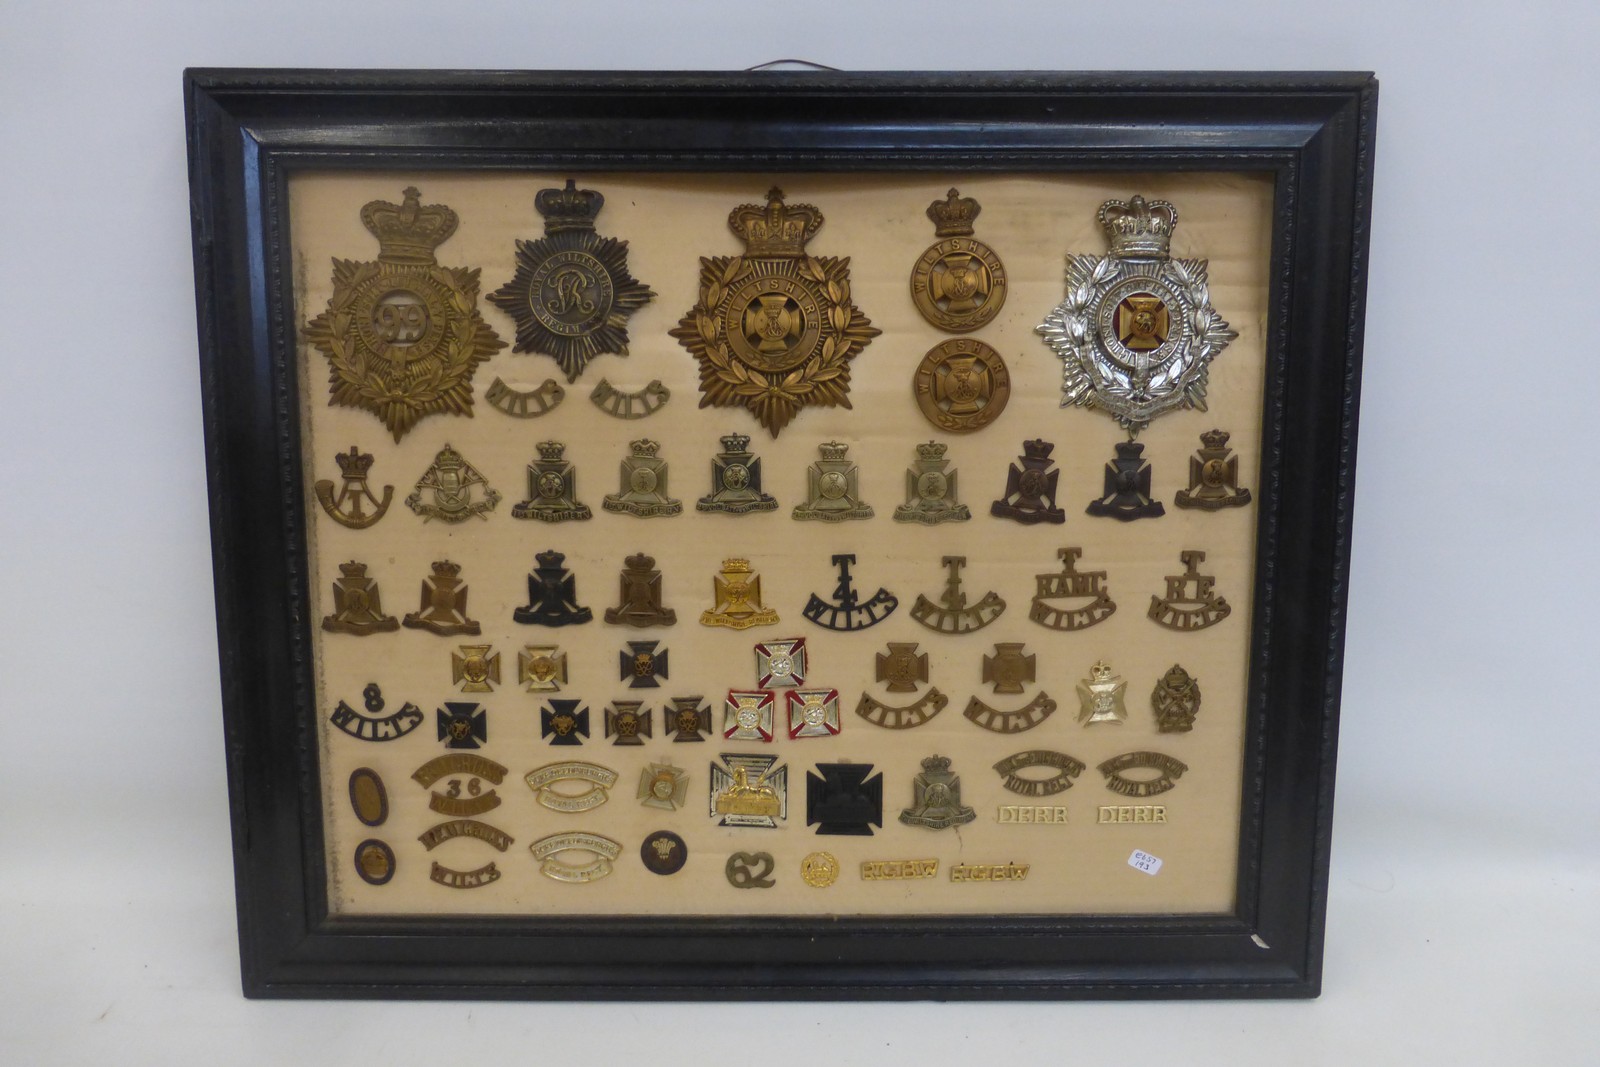 A framed display of 61 Wiltshire Regiment helmet plates, cap badges and shoulder titles.